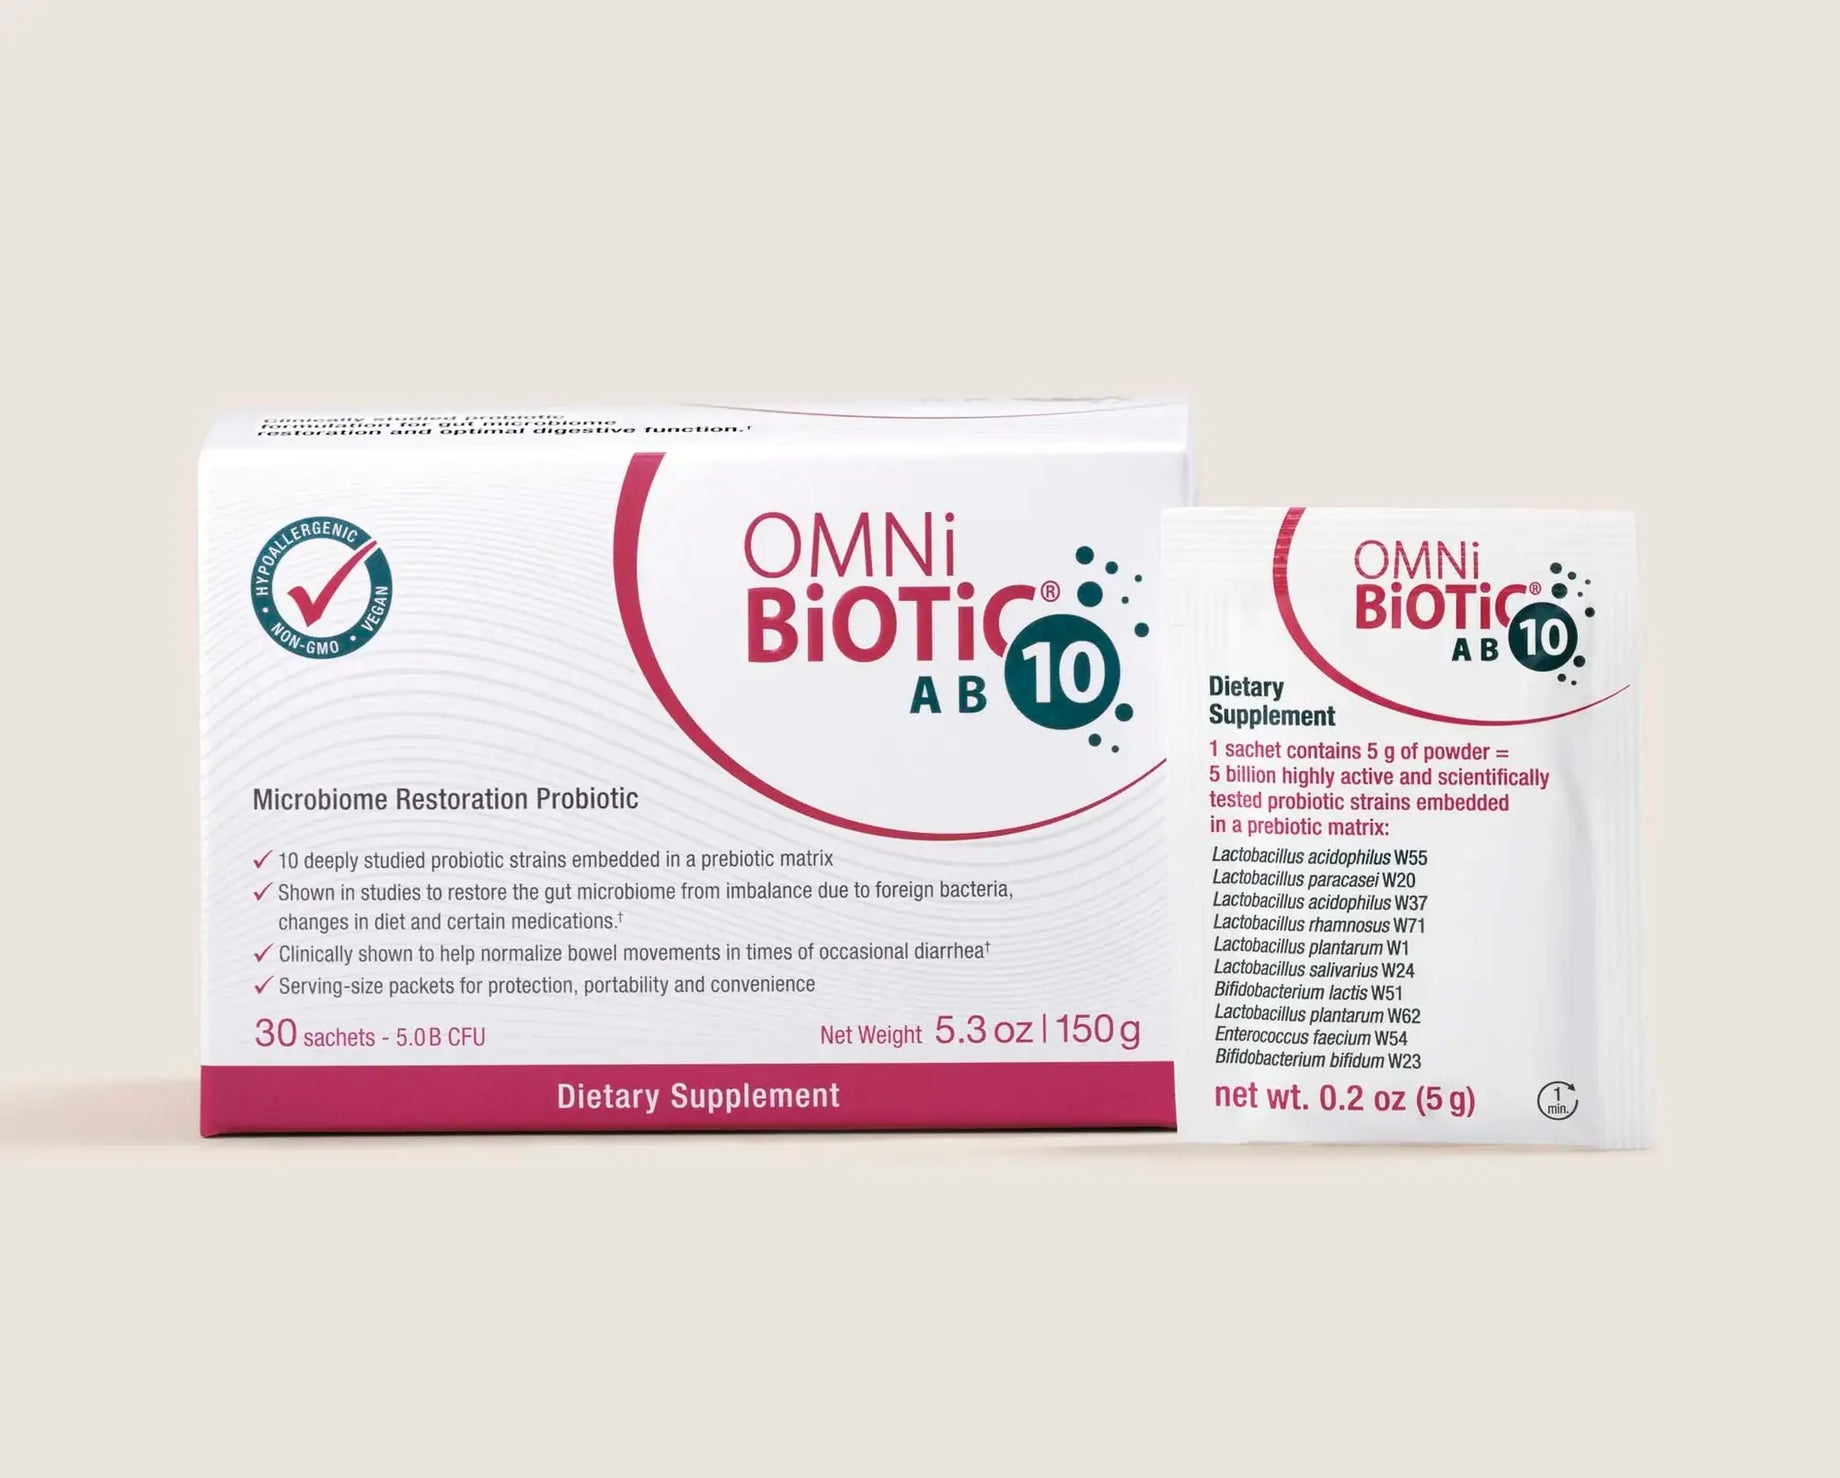 Introducing Omni-Biotic AB10